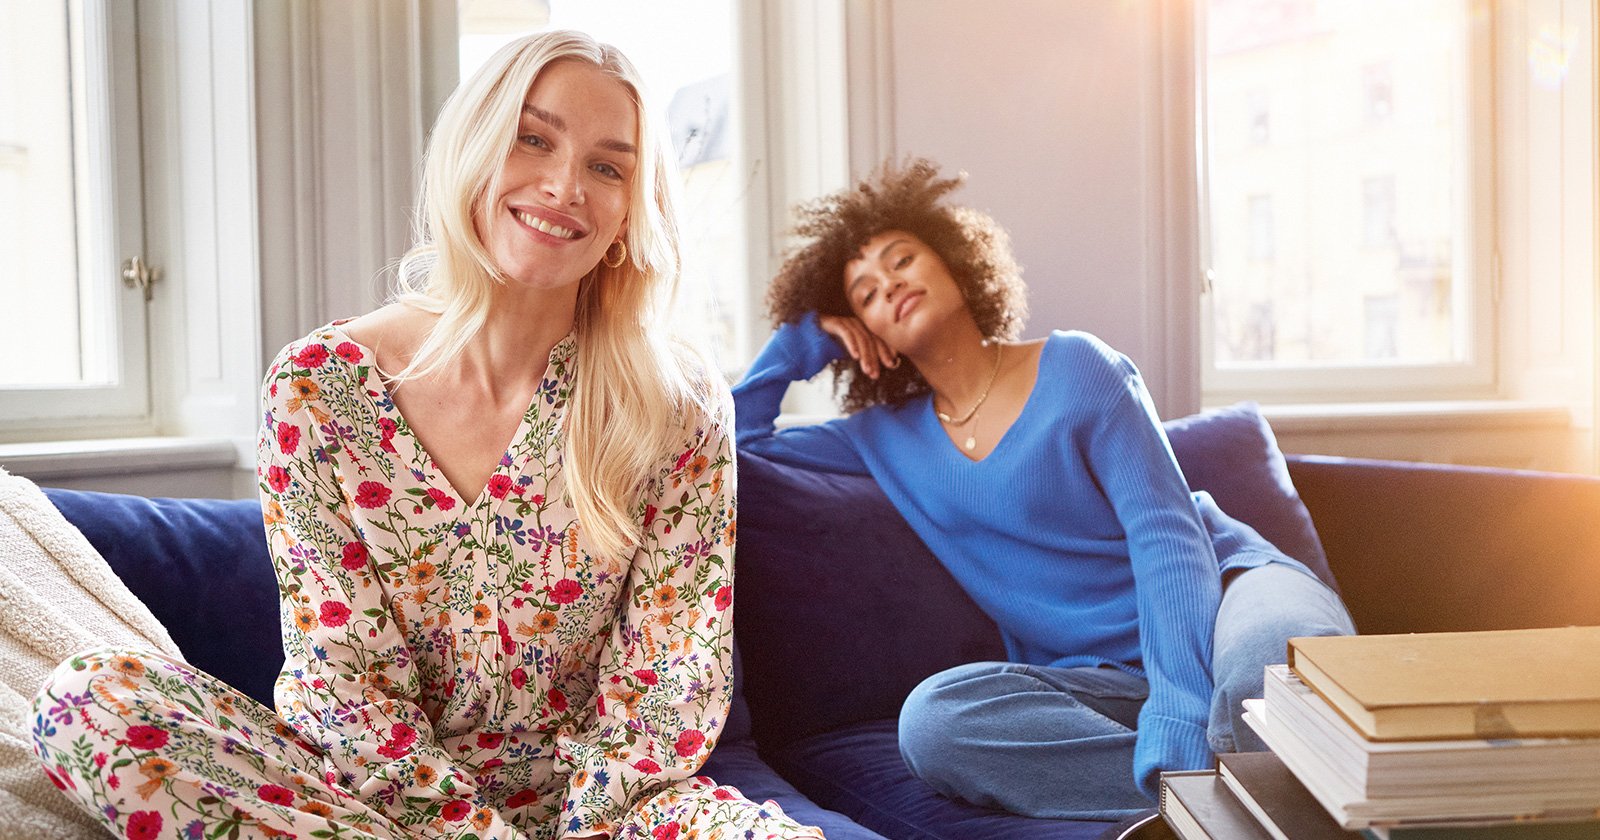 Två kvinnor sitter på en blå soffa i ett härligt vårljus. Den ena kvinnan har på sig en blommig klänning och den andra har på sig en blå, stickad tröja.